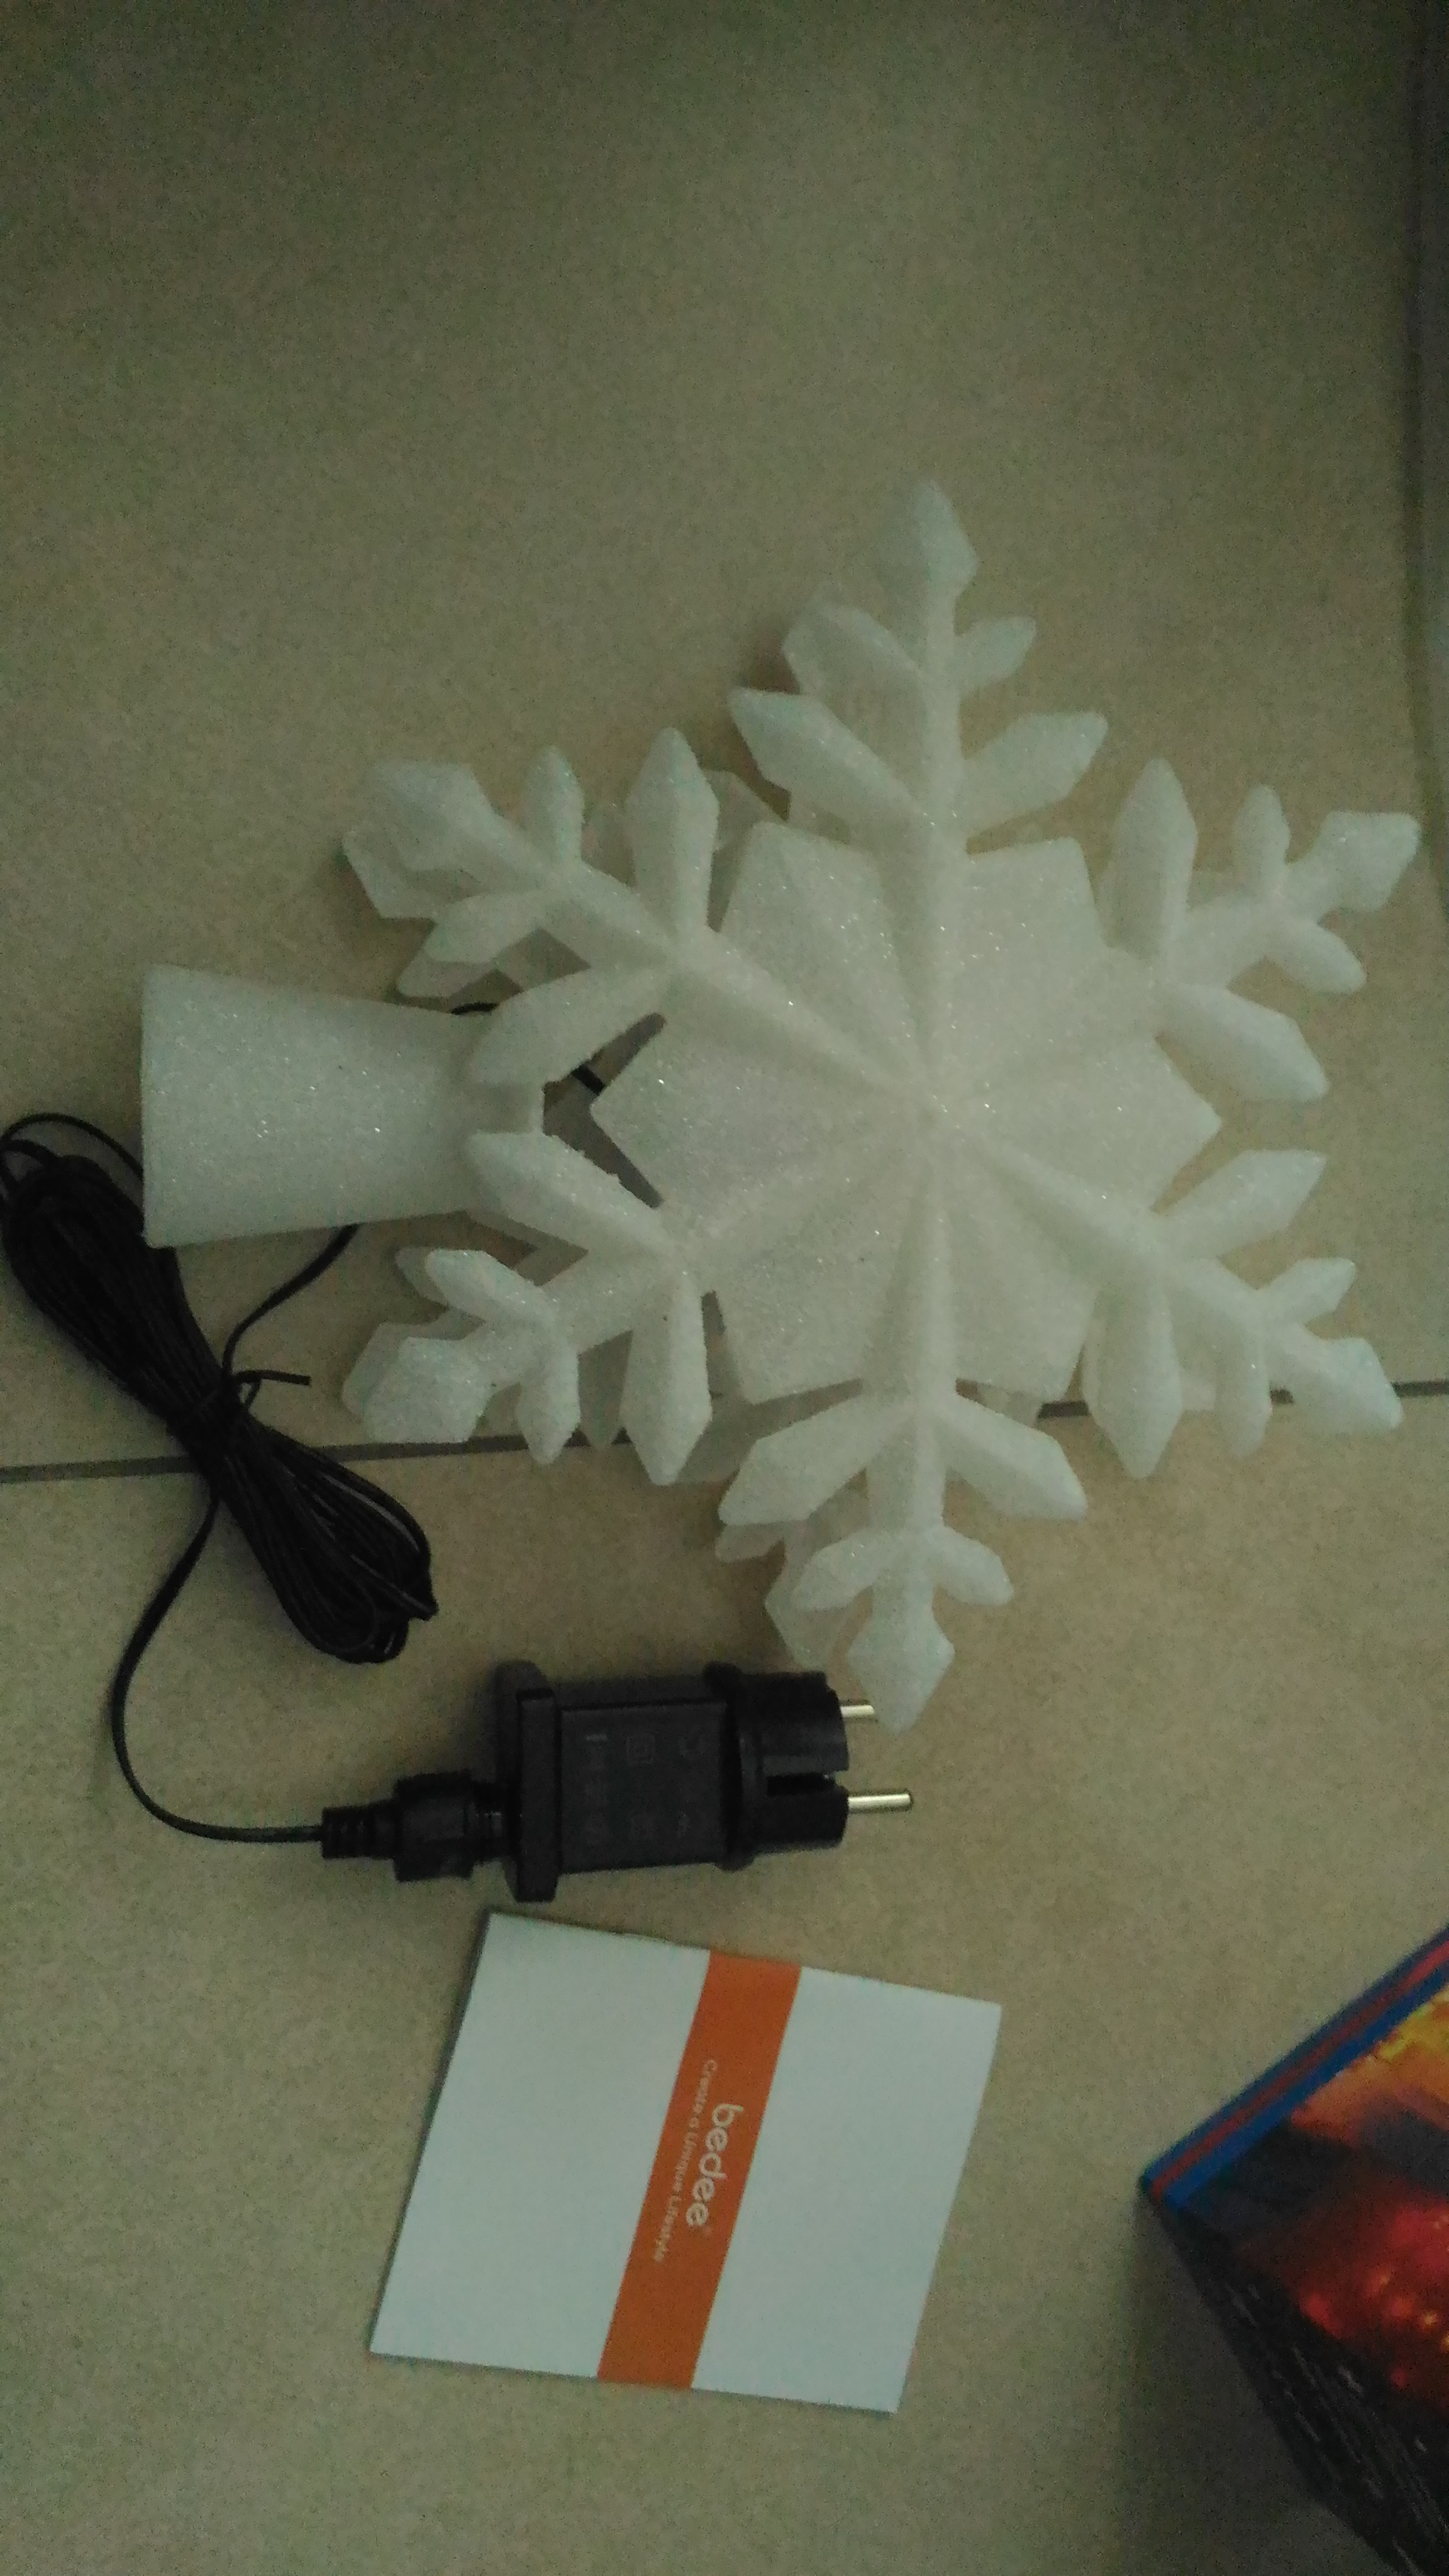 Puntale proiettore a fiocco di neve con luce dinamica per un’atmosfera natalizia suggestiva